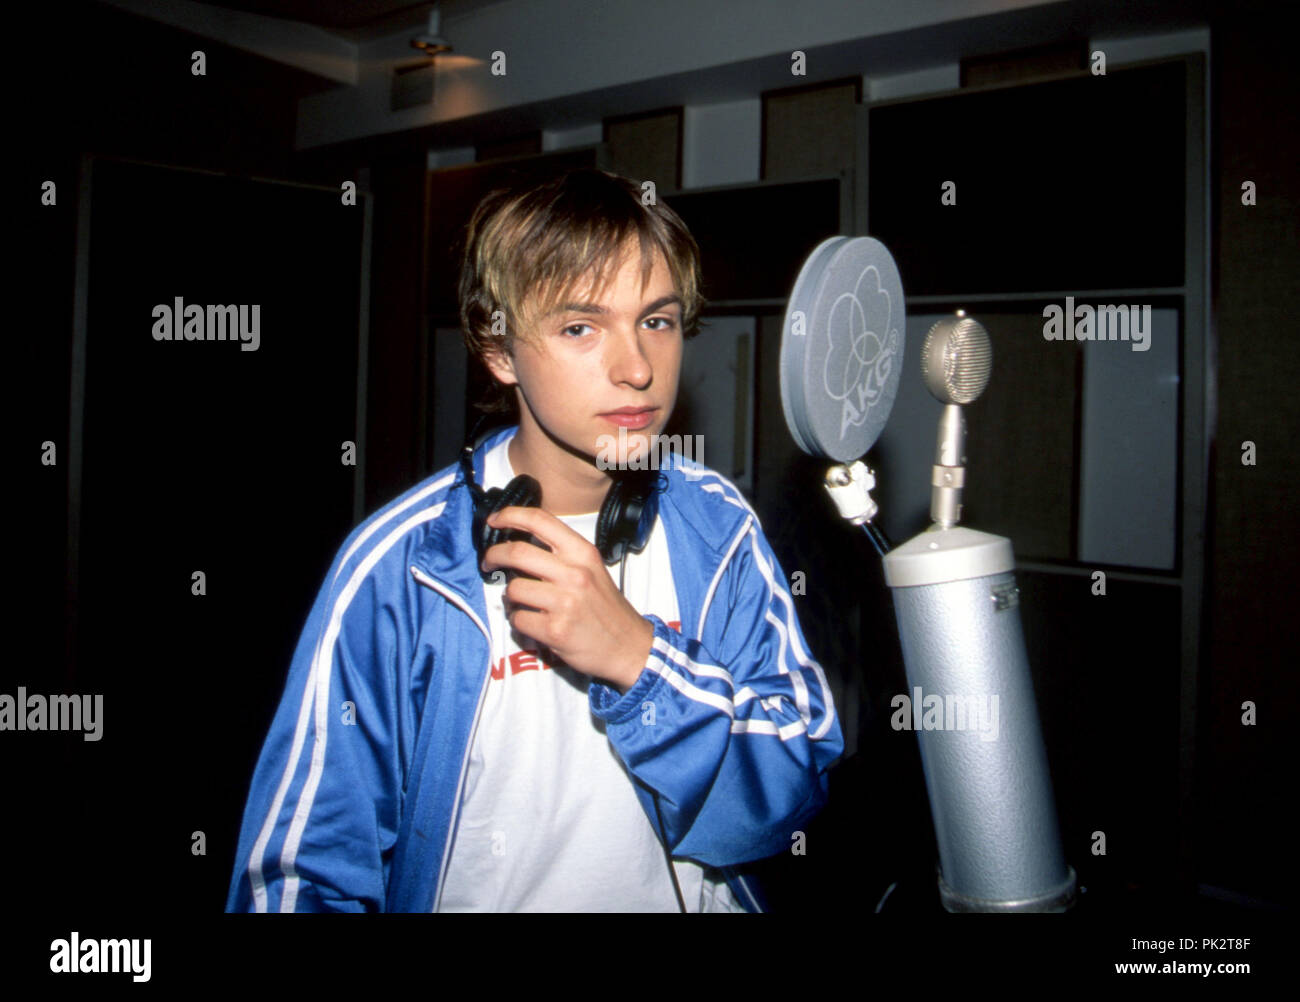 Deutsche pop band ECHT 1999 in Hamburg | Verwendung weltweit  Stockfotografie - Alamy